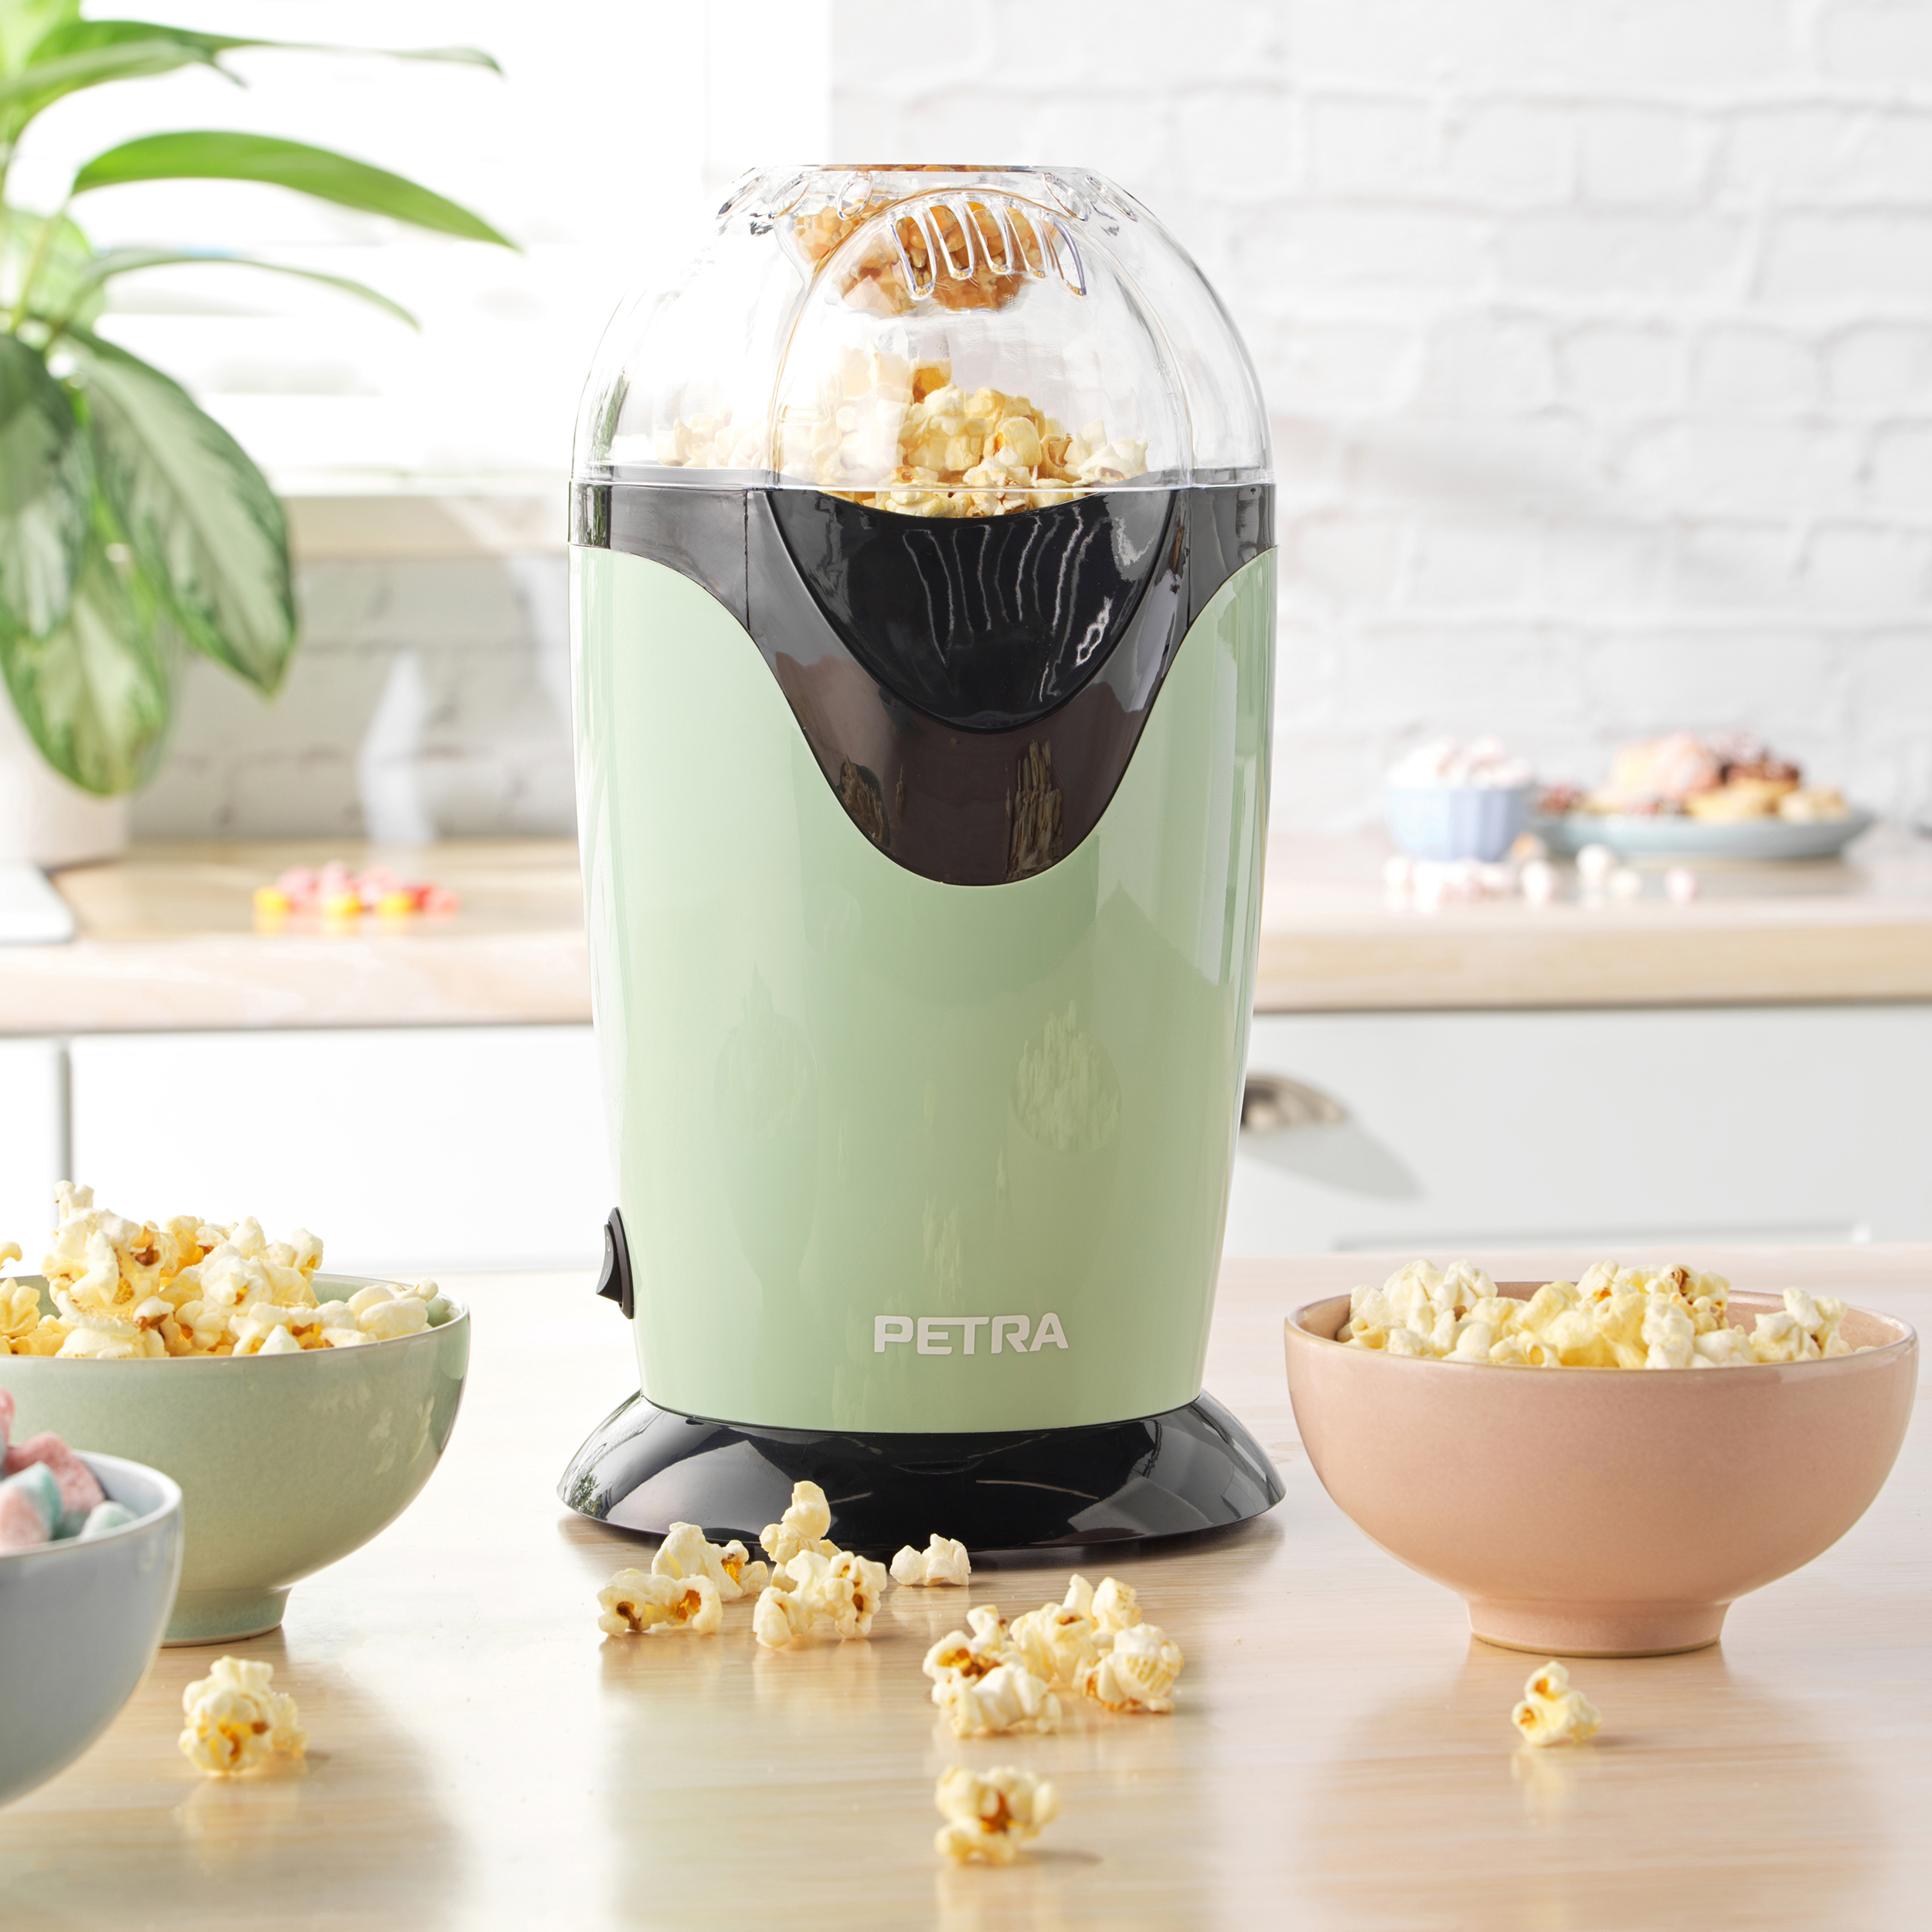 PETRA Retro Popcornmaschine ohne - oder Popcorn Butter - Popcorn - Öl - Messbecher grün 1200W Heißluft maker Popcornmaschine